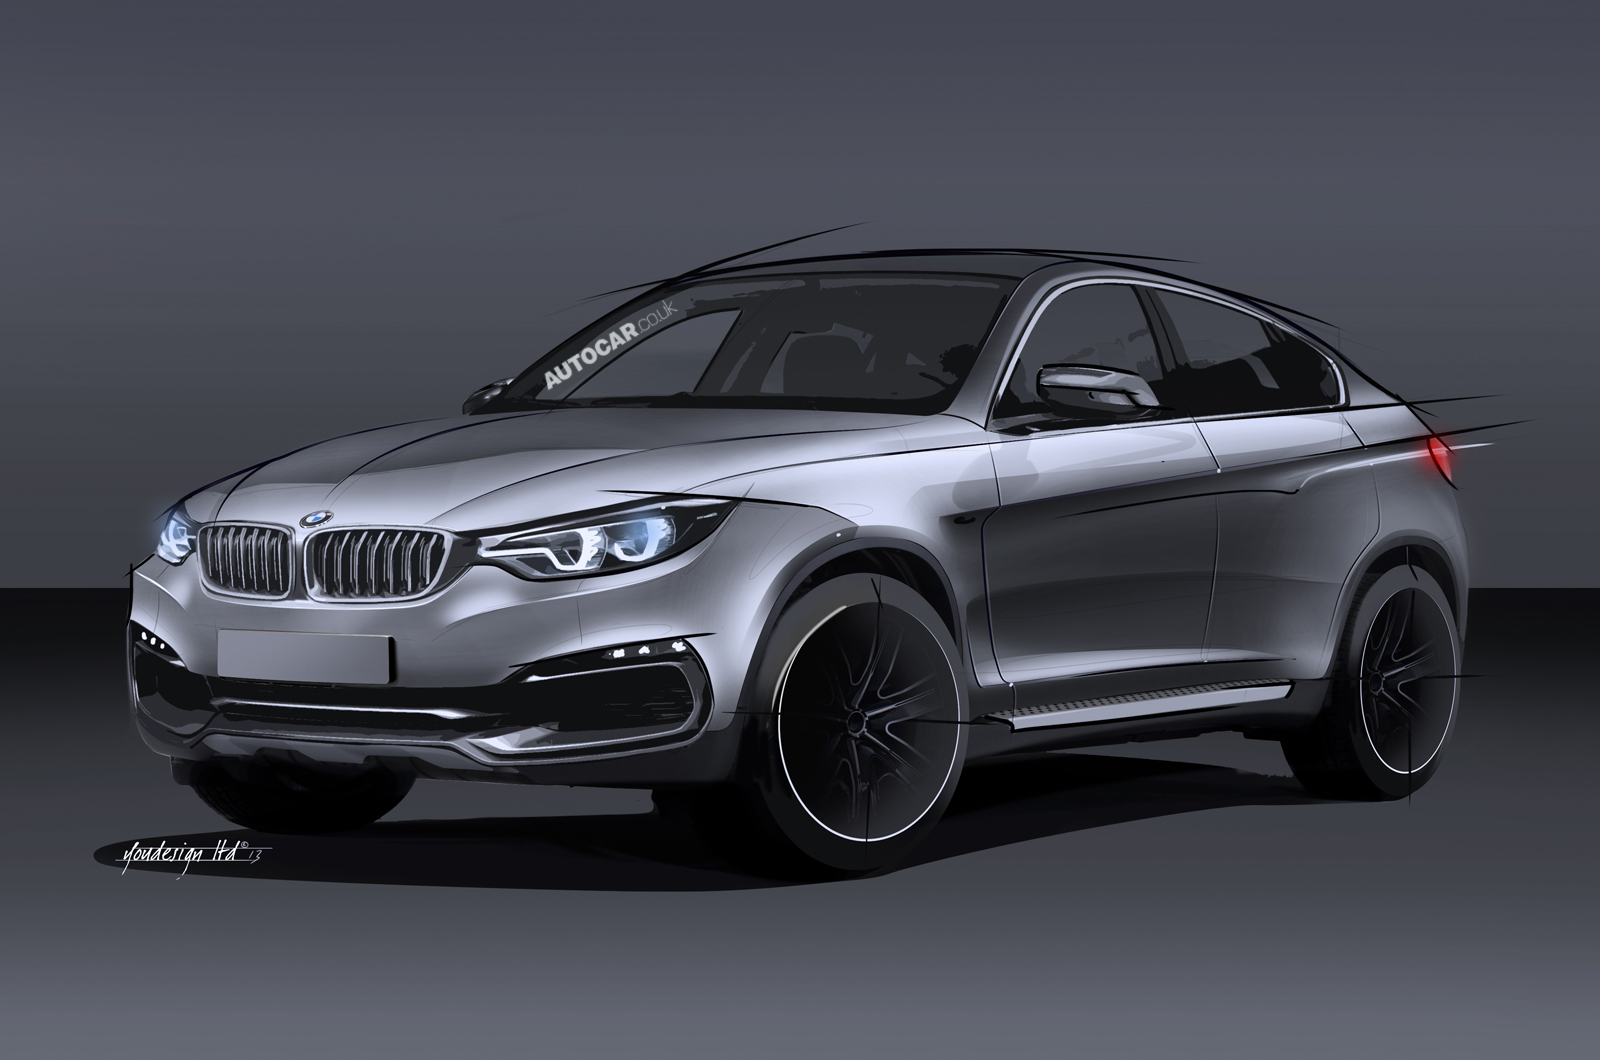 BMW x6 Concept